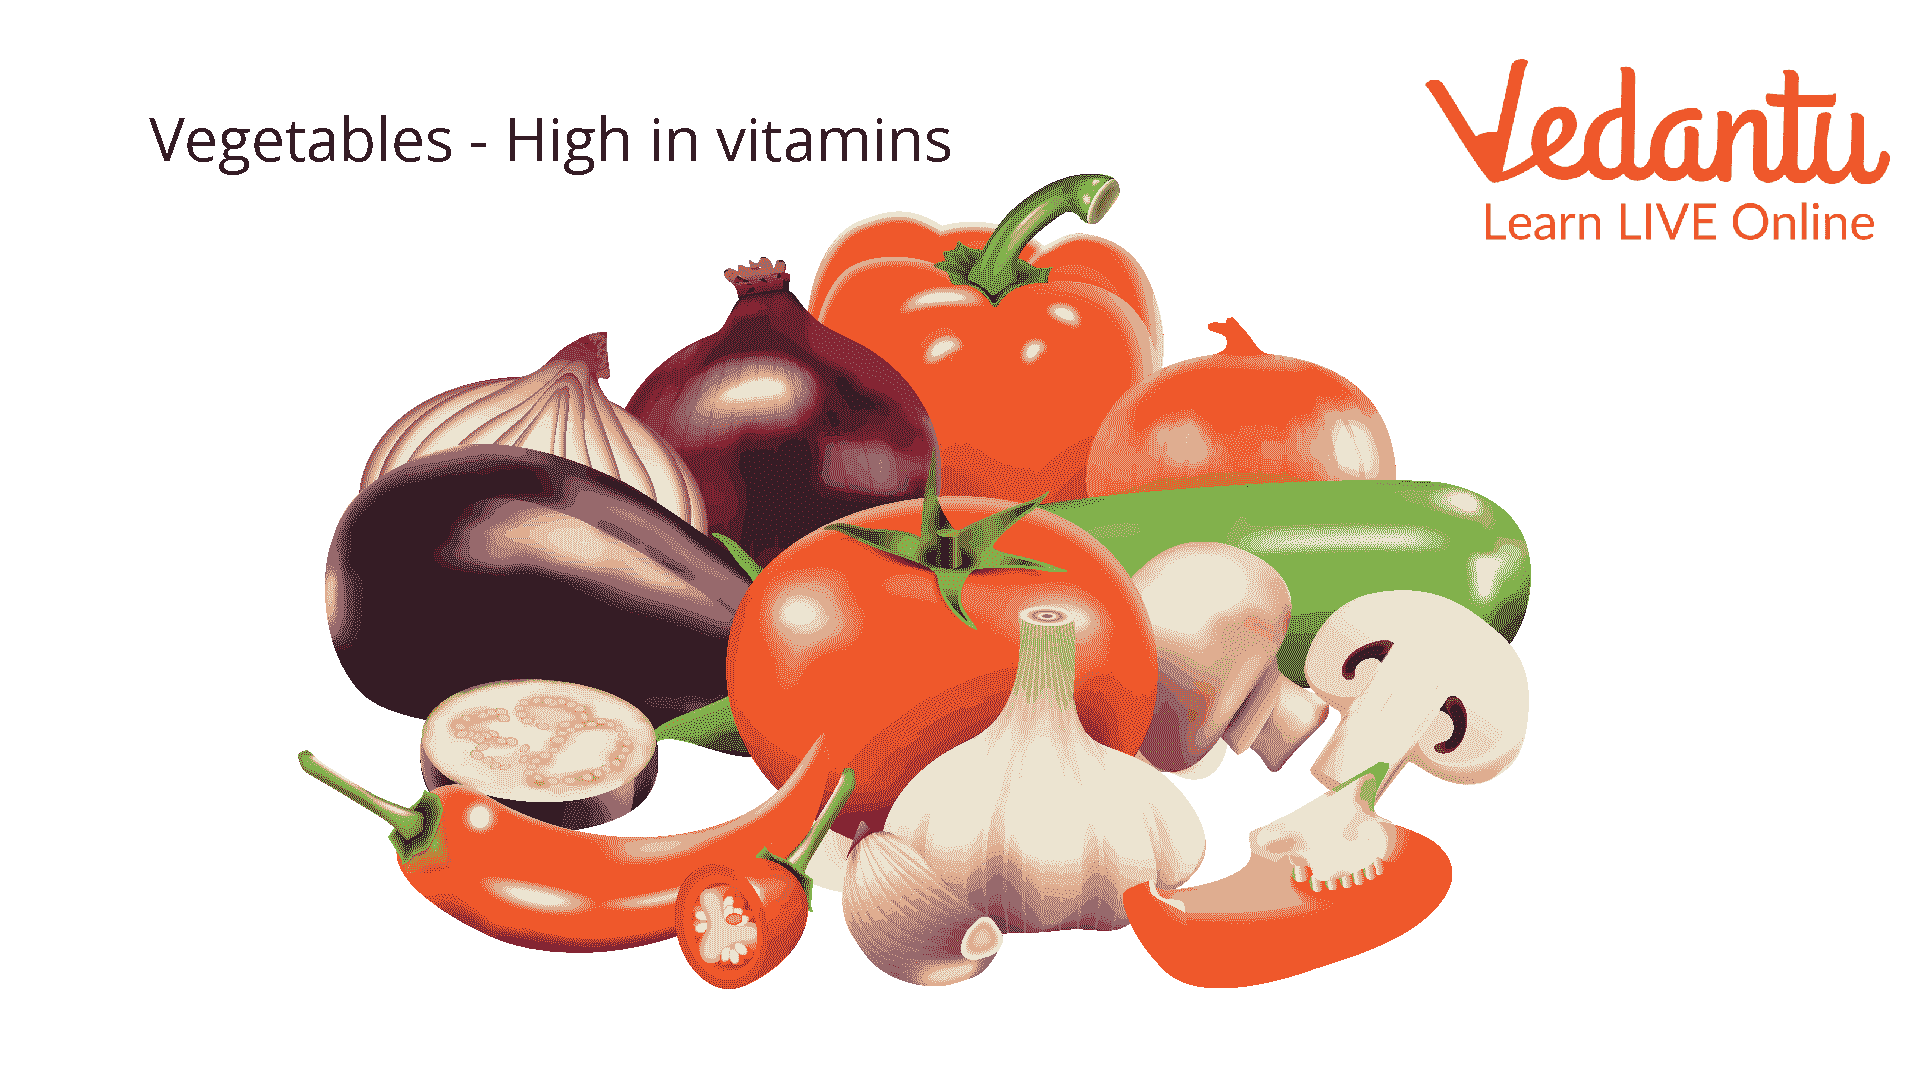 Vegetables - High in Vitamins